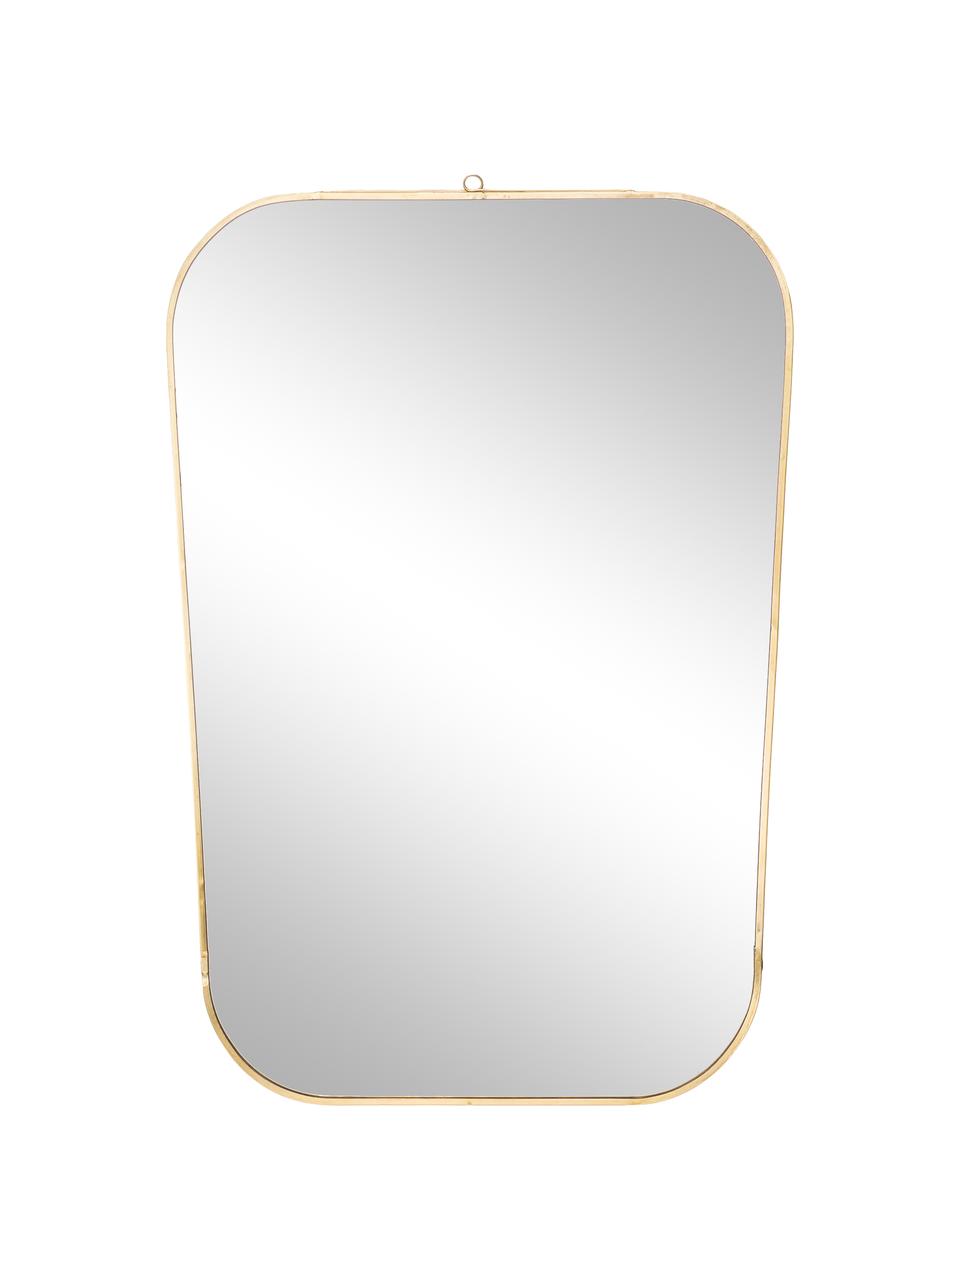 Eckiger Wandspiegel Rounded mit Goldrahmen, Rahmen: Eisen lackiert, Antik-Fin, Spiegelfläche: Spiegelglas, Goldfarben, 35 x 51 cm